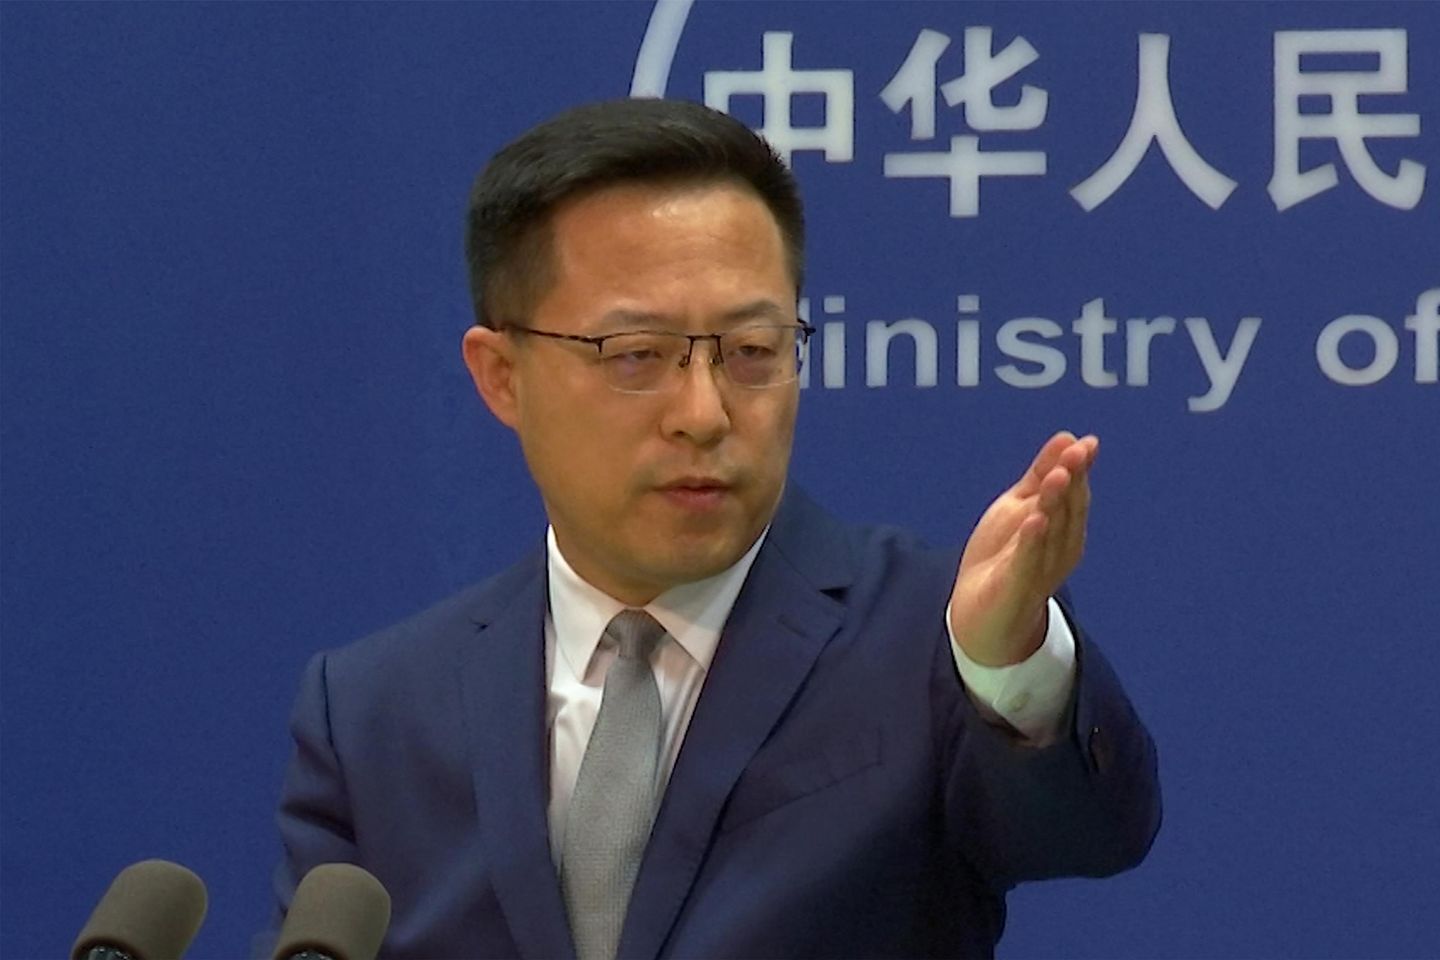 Çin, ABD'den Tayvan ile ticaret görüşmelerini durdurmasını istedi